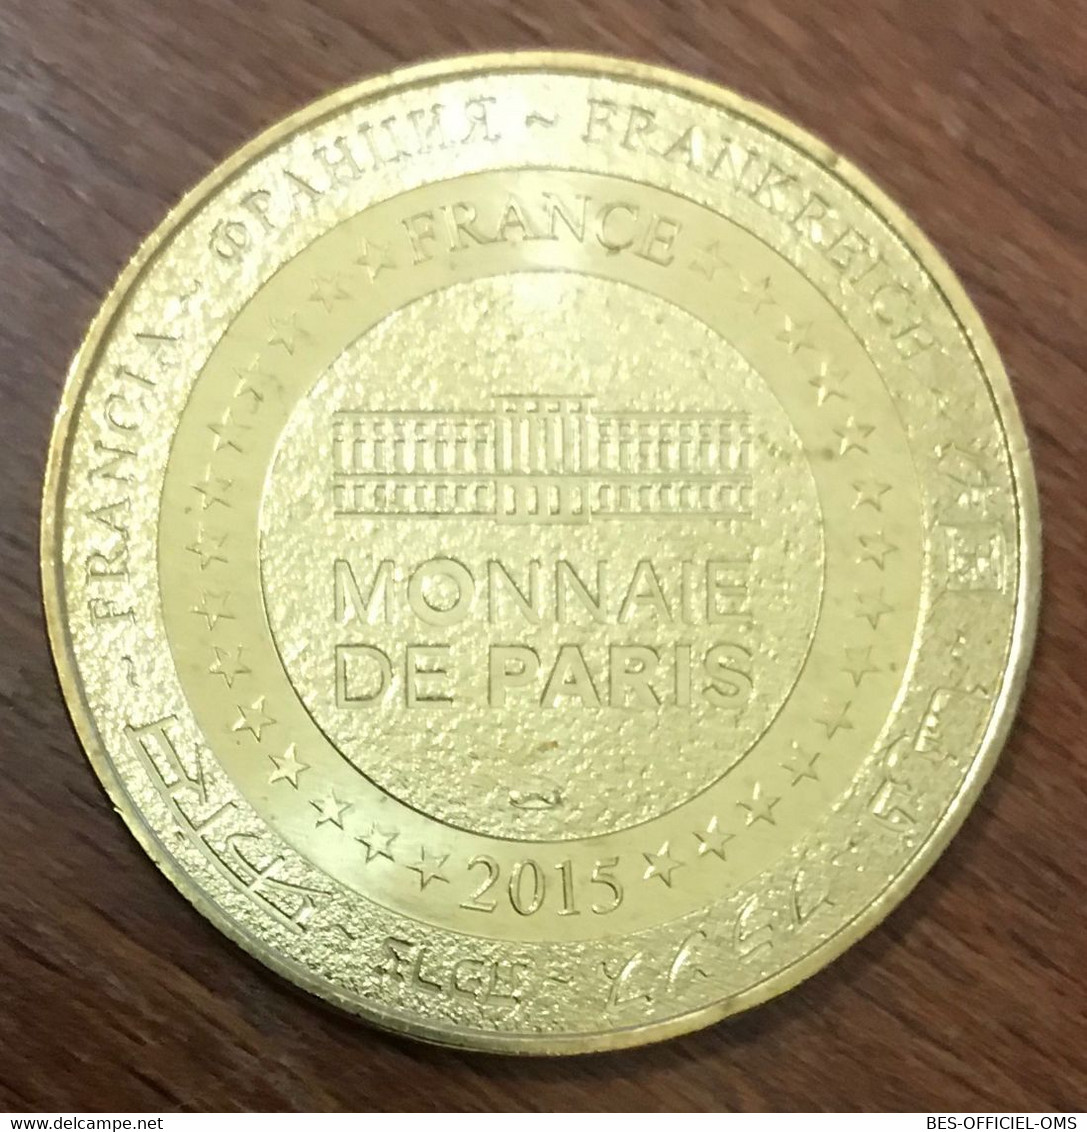 07 PEAUGRES LA HYÈNE MDP 2015 MINI MÉDAILLE SOUVENIR MONNAIE DE PARIS JETON TOURISTIQUE TOKEN MEDALS COINS - 2015